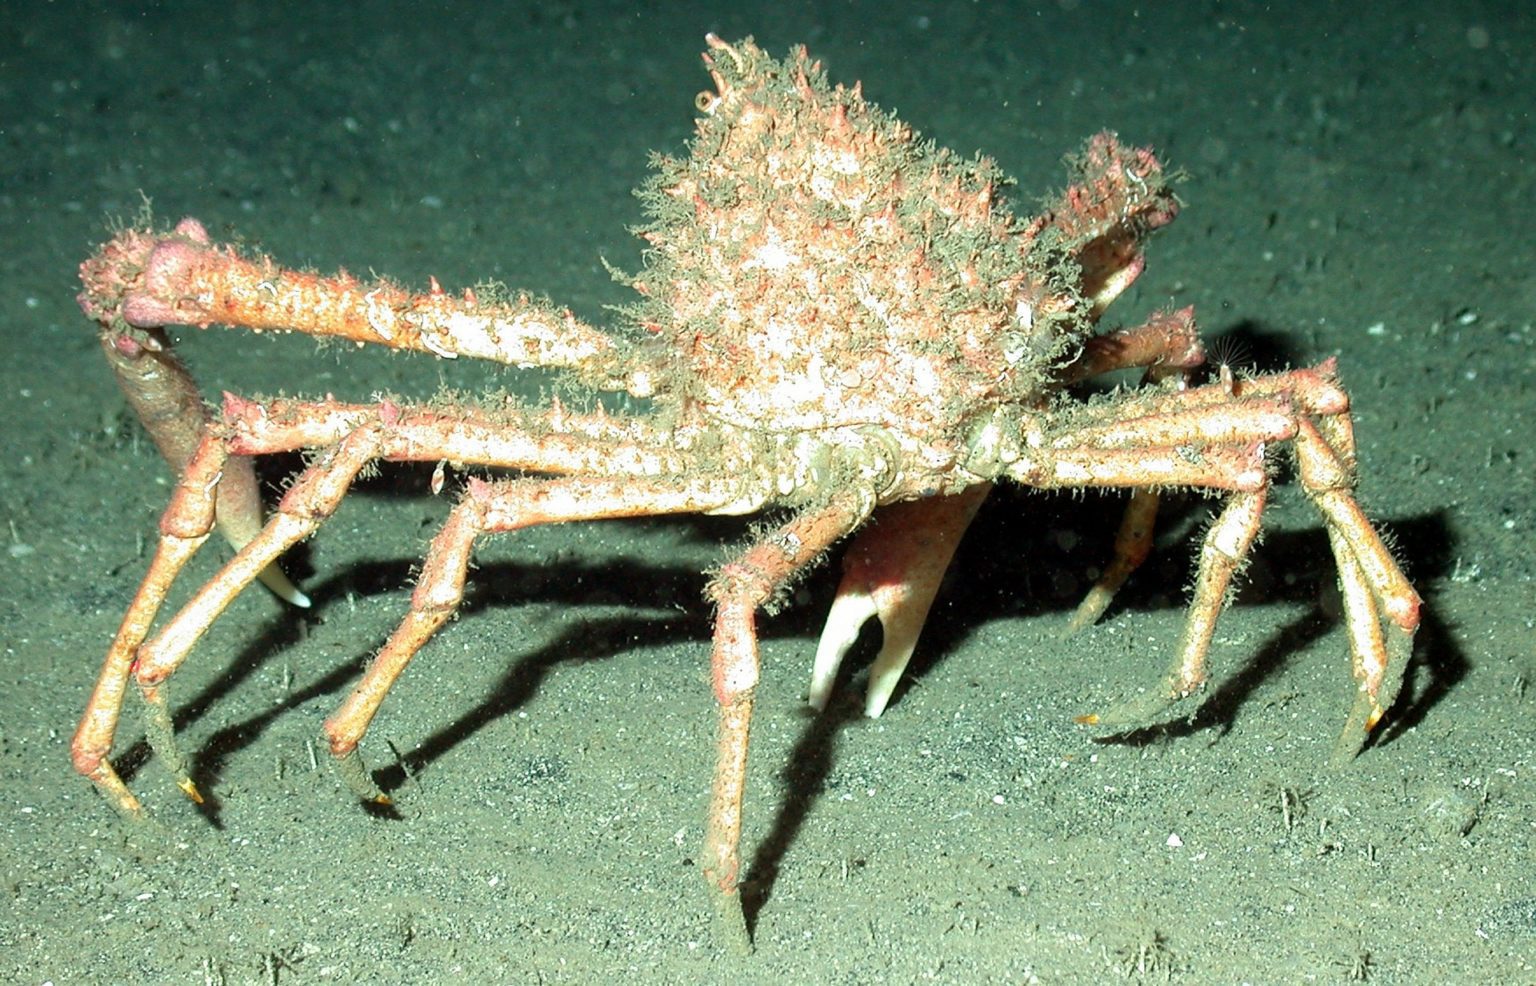 Cornish king crab